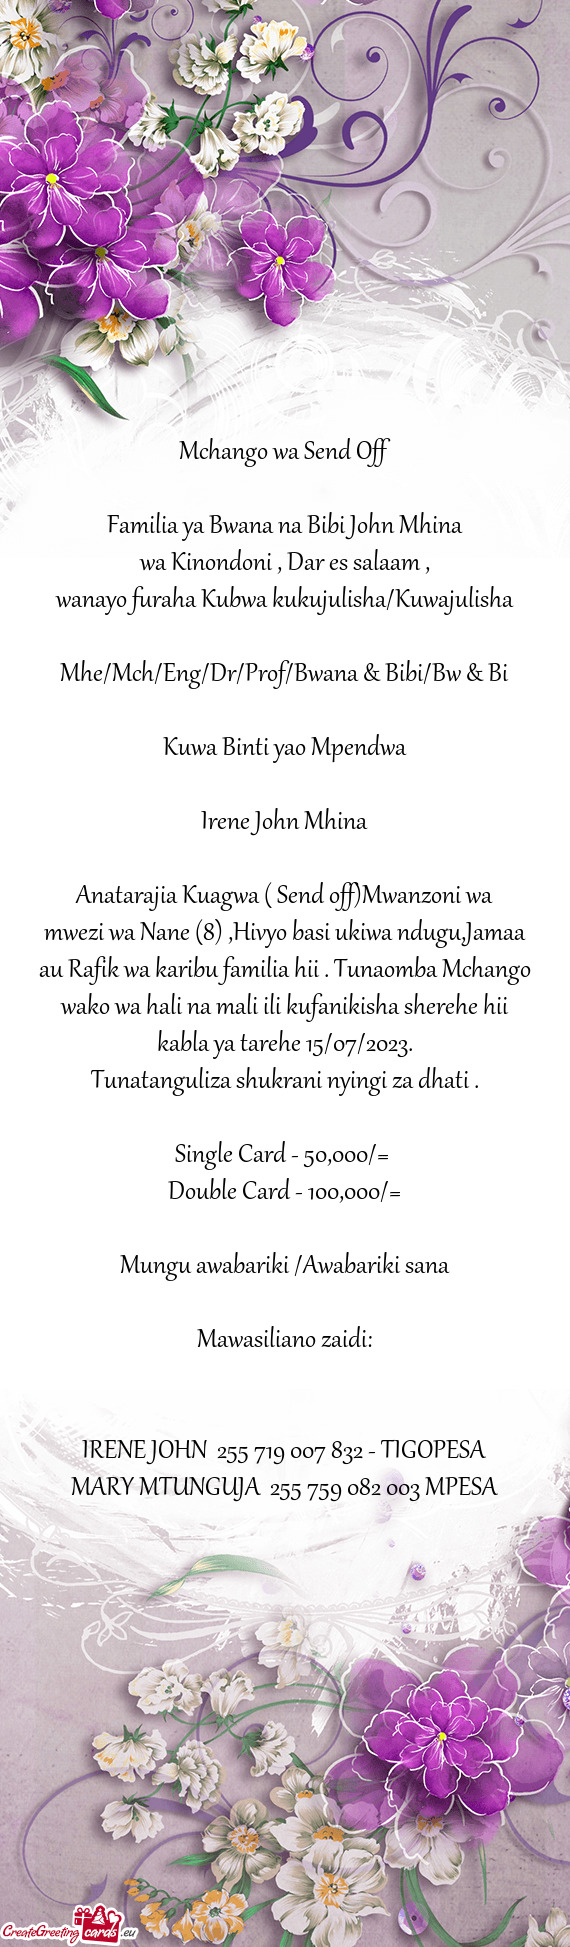 Familia ya Bwana na Bibi John Mhina